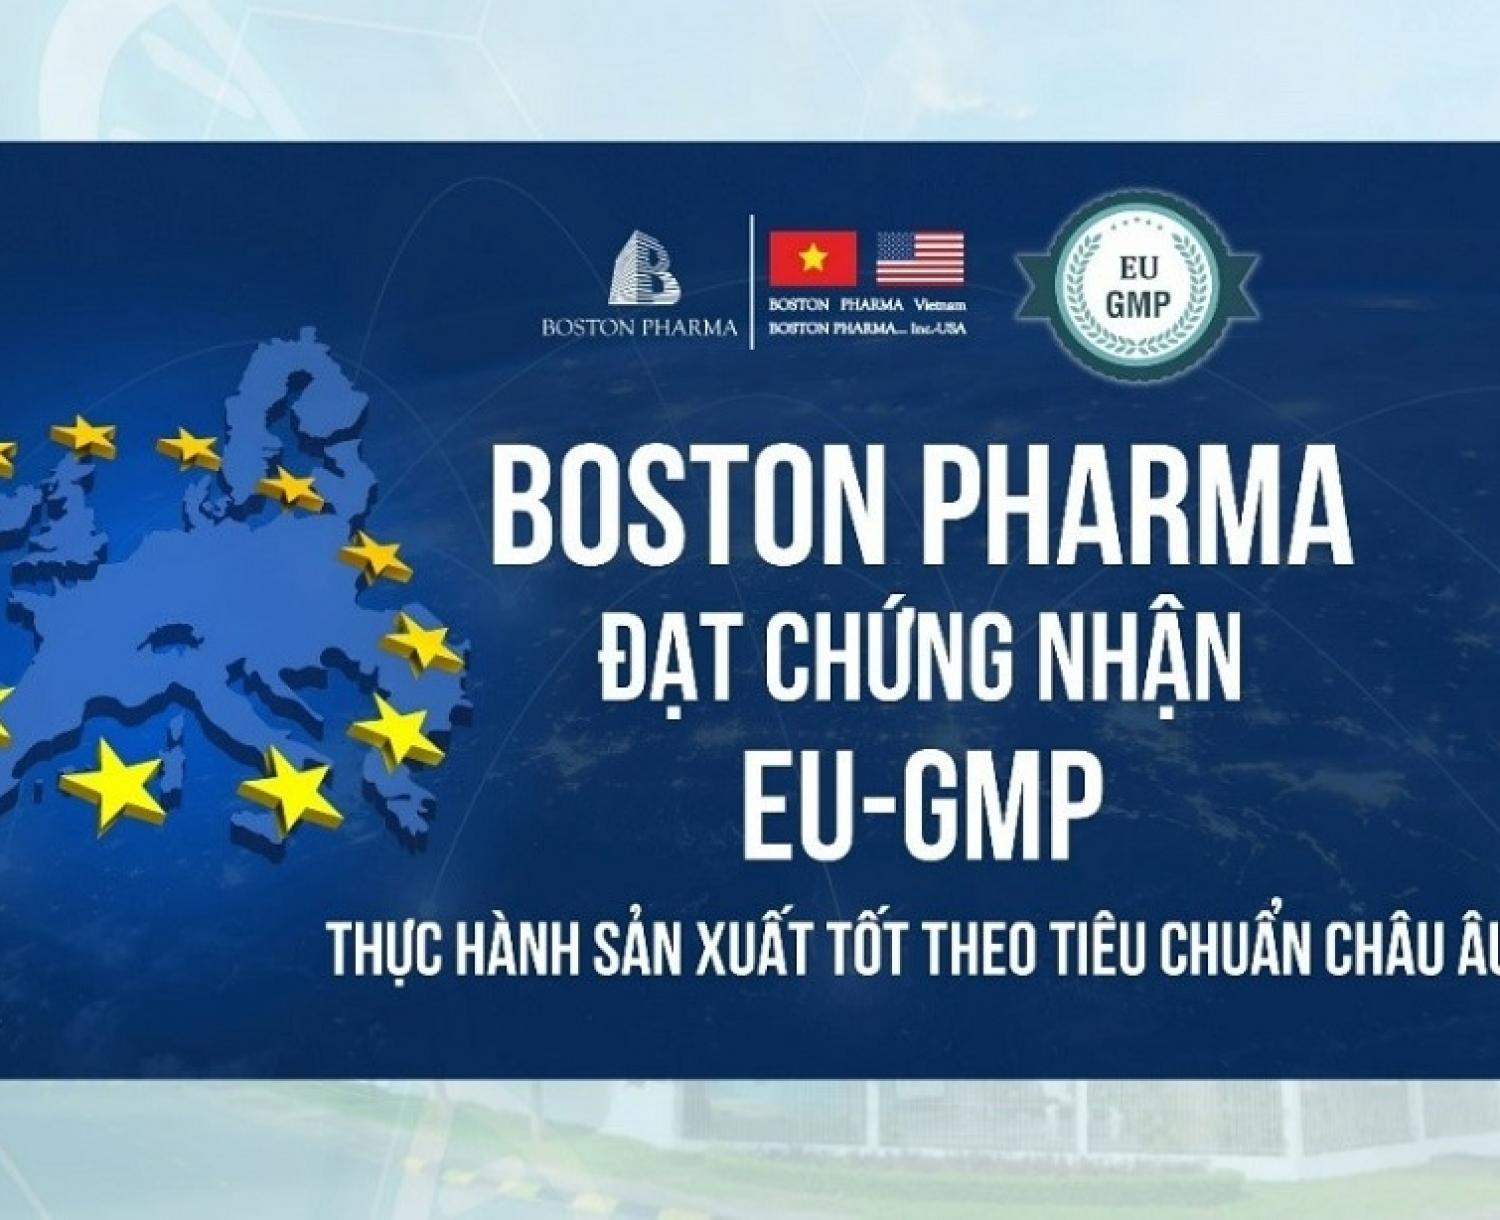 Dược phẩm Boston Việt Nam - Doanh nghiệp sản xuất thuốc đạt tiêu chuẩn chất lượng Châu Âu